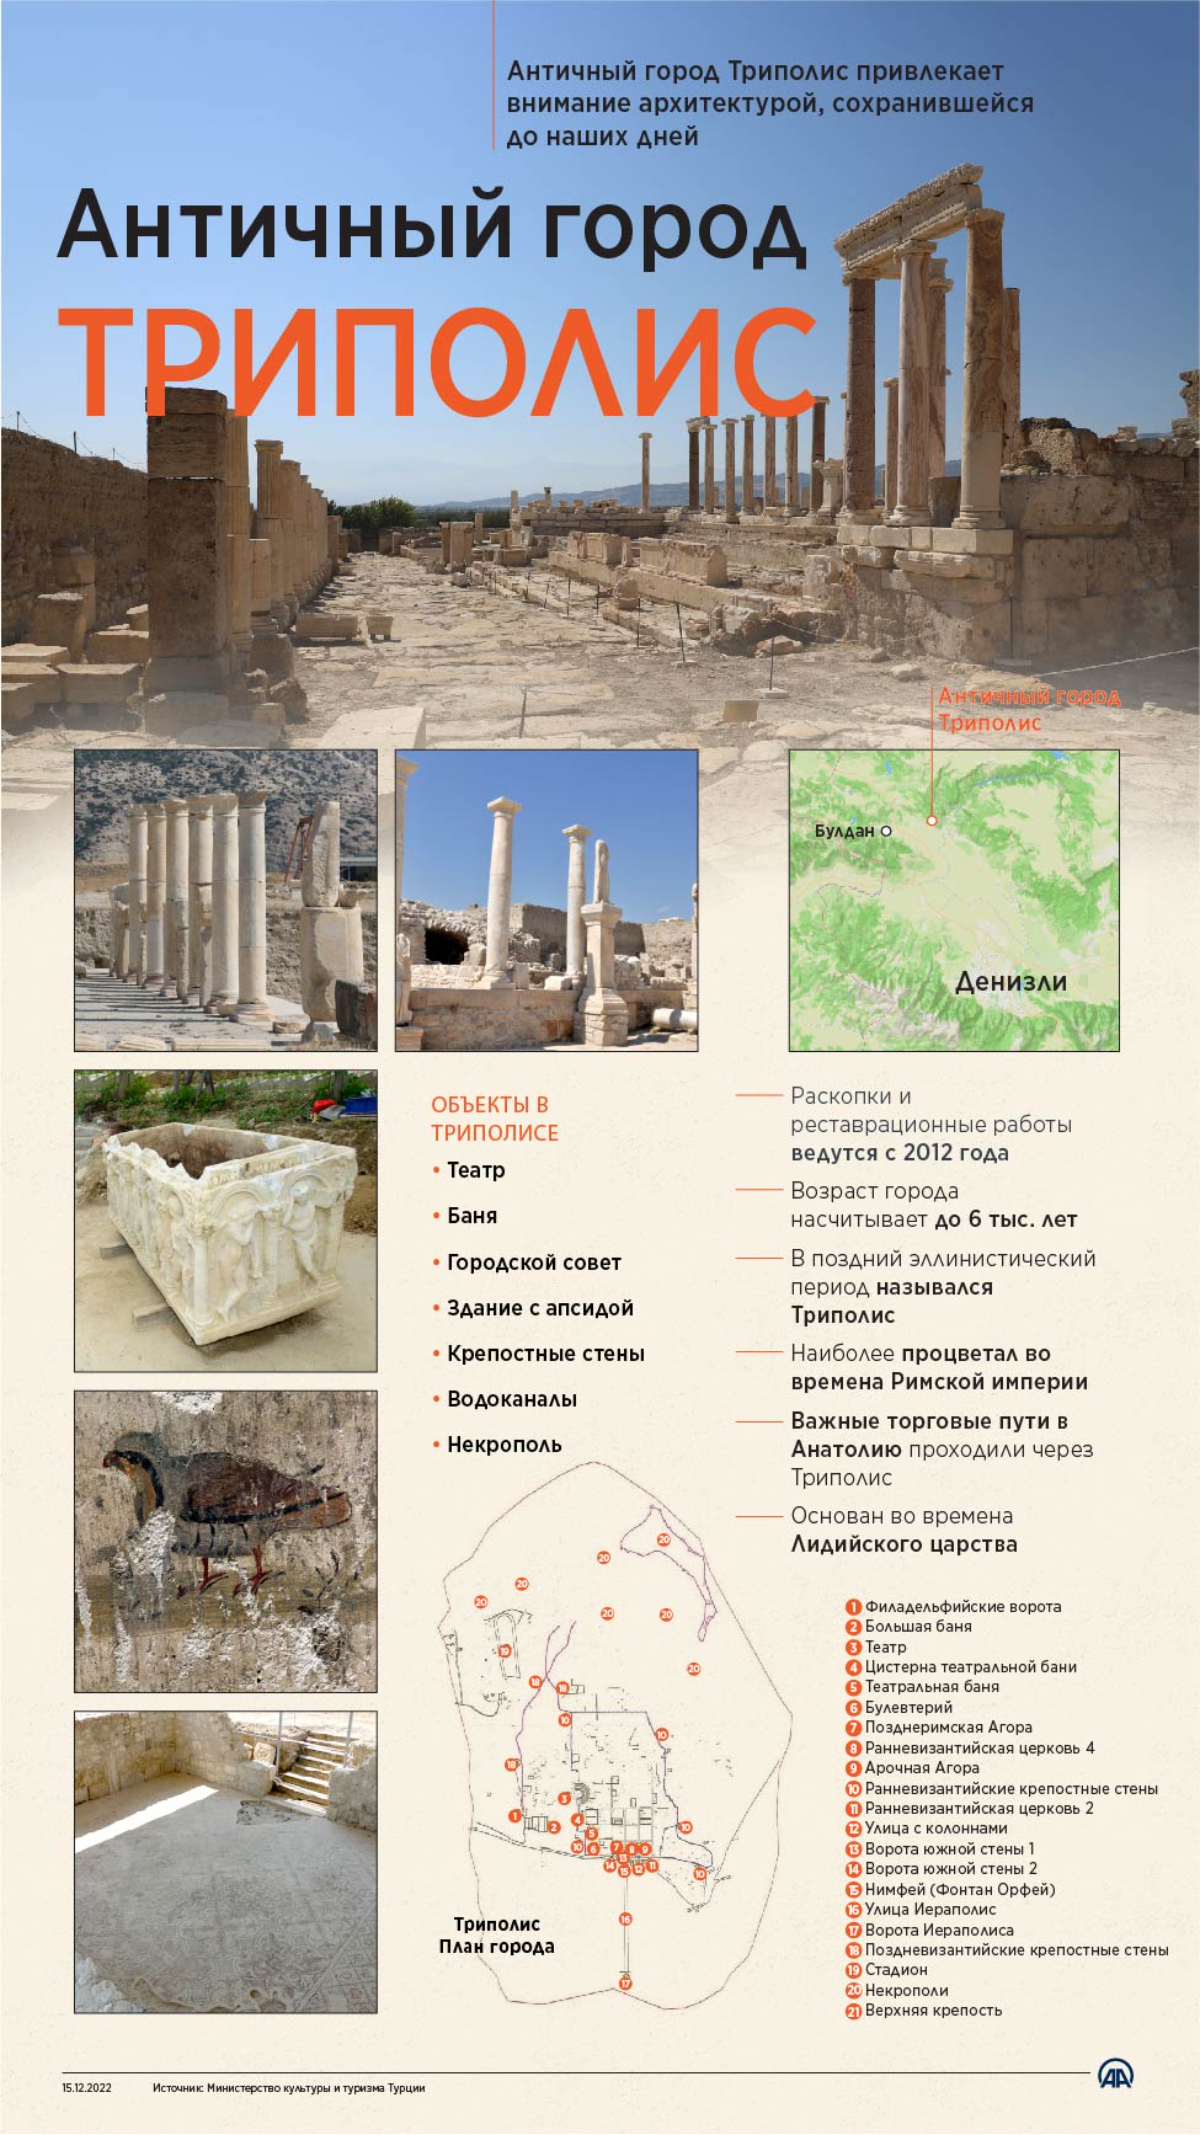 Античный город Триполис